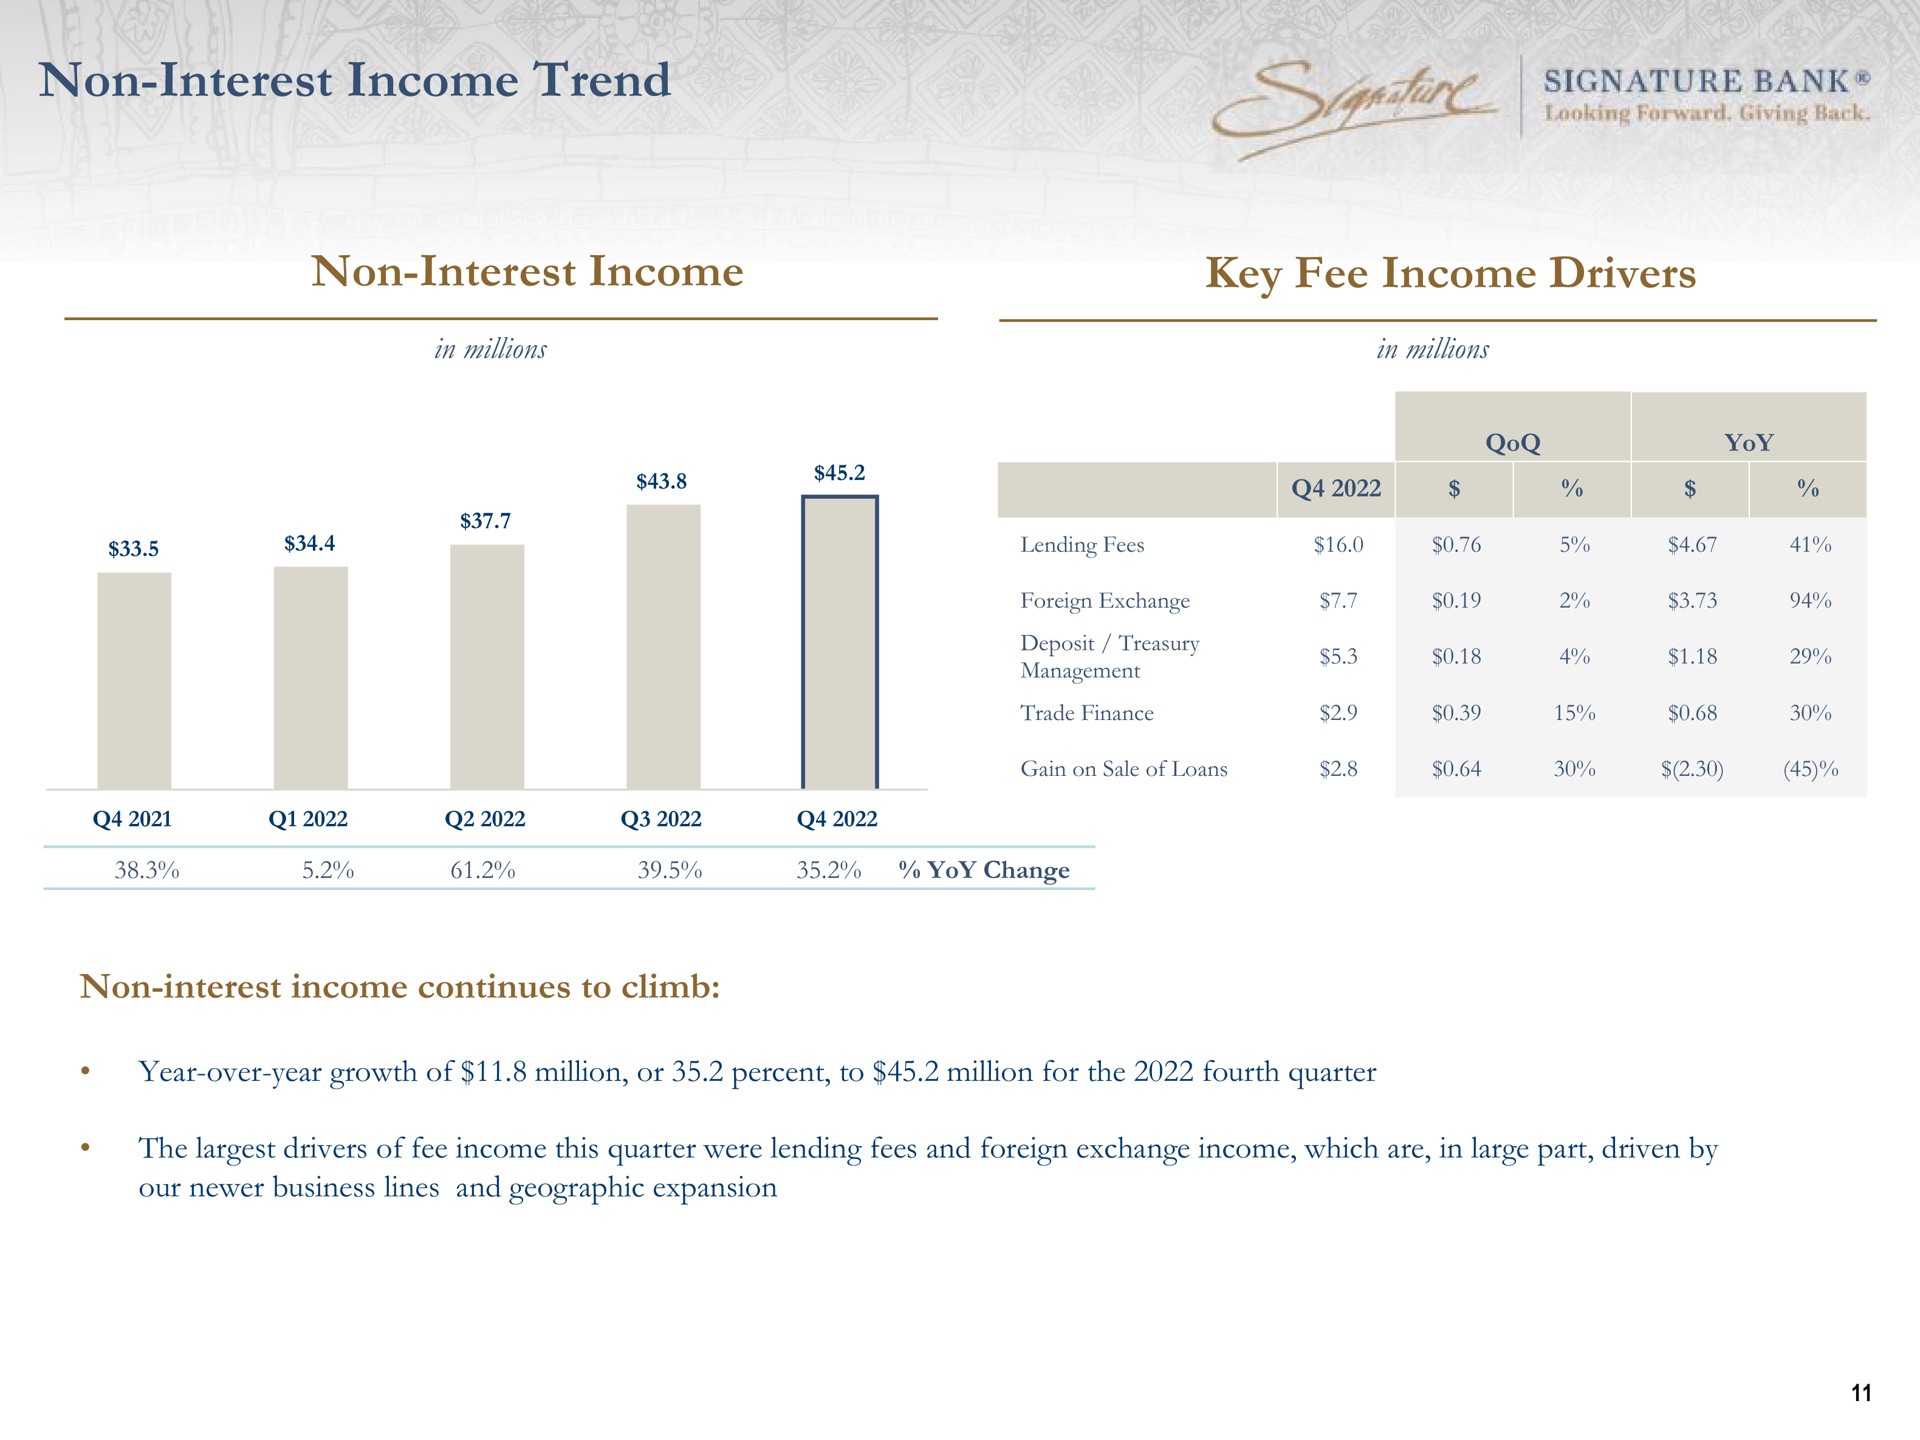 non interest income trend non interest income key fee income drivers mire signature bank | Signature Bank